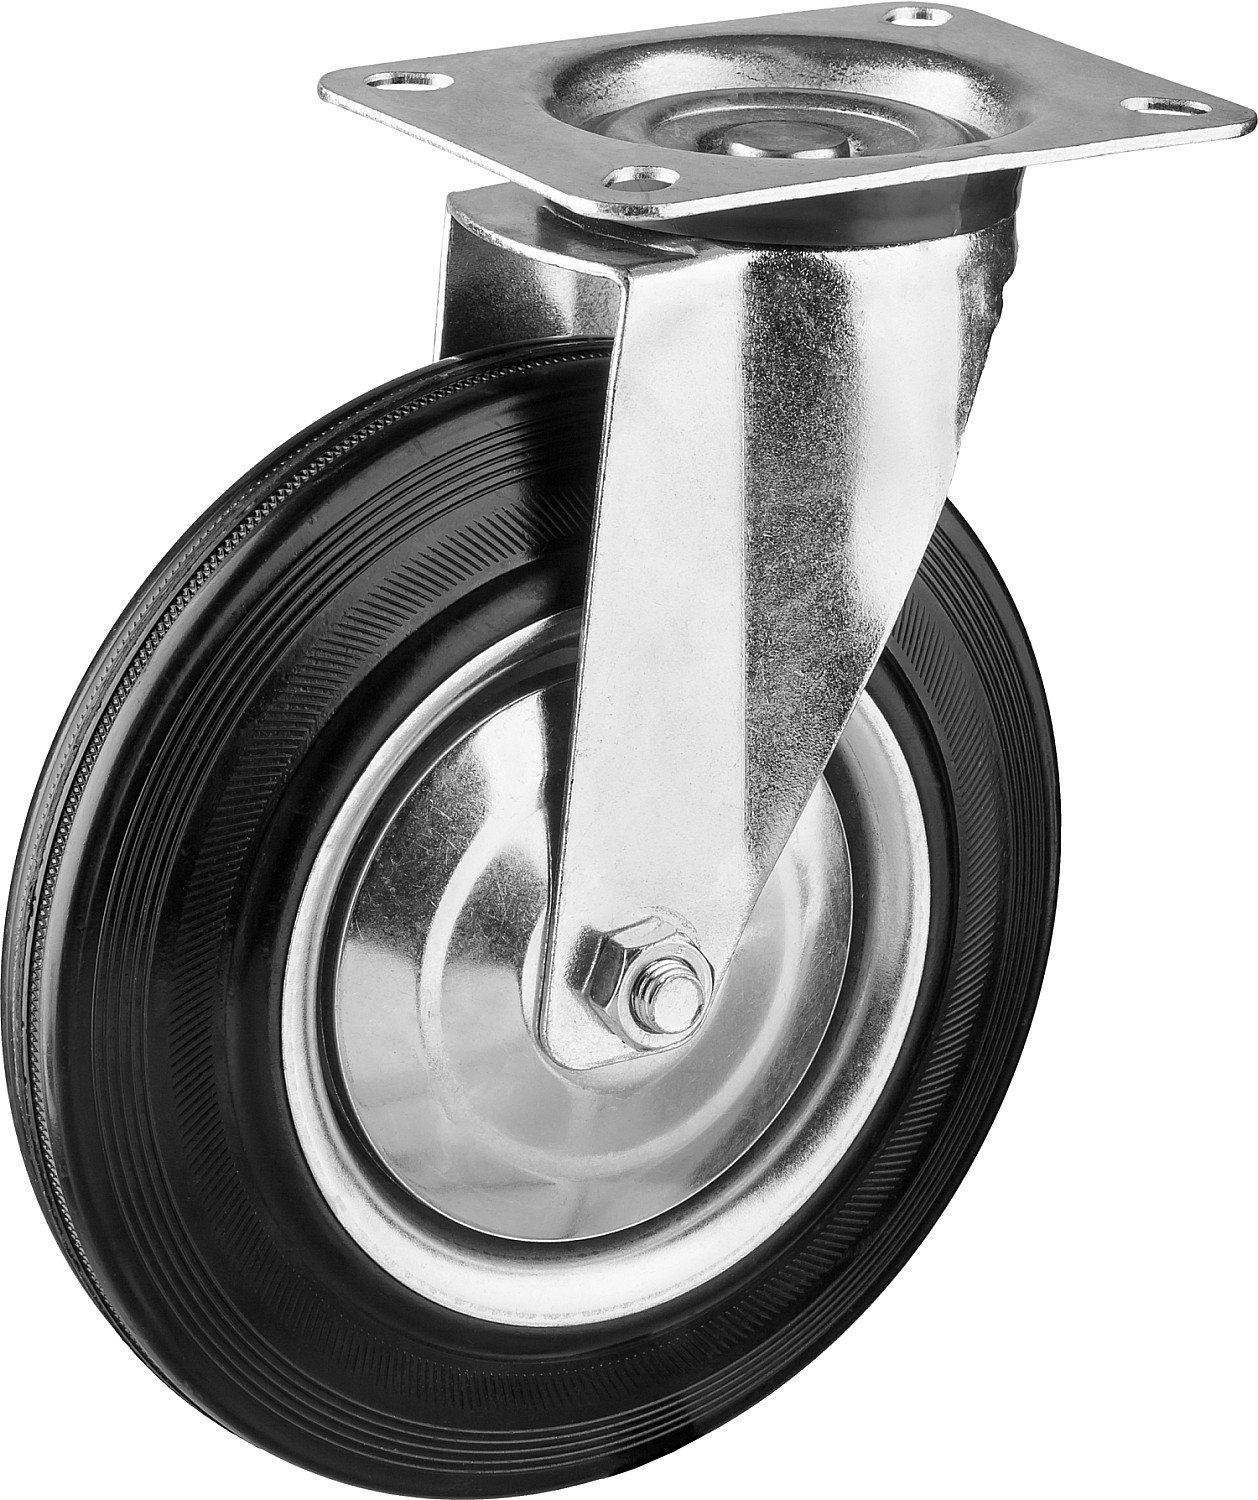 Поворотное колесо резина металл игольчатый подшипник ЗУБР Профессионал d 200 мм г п 185 кг (30936-200-S)